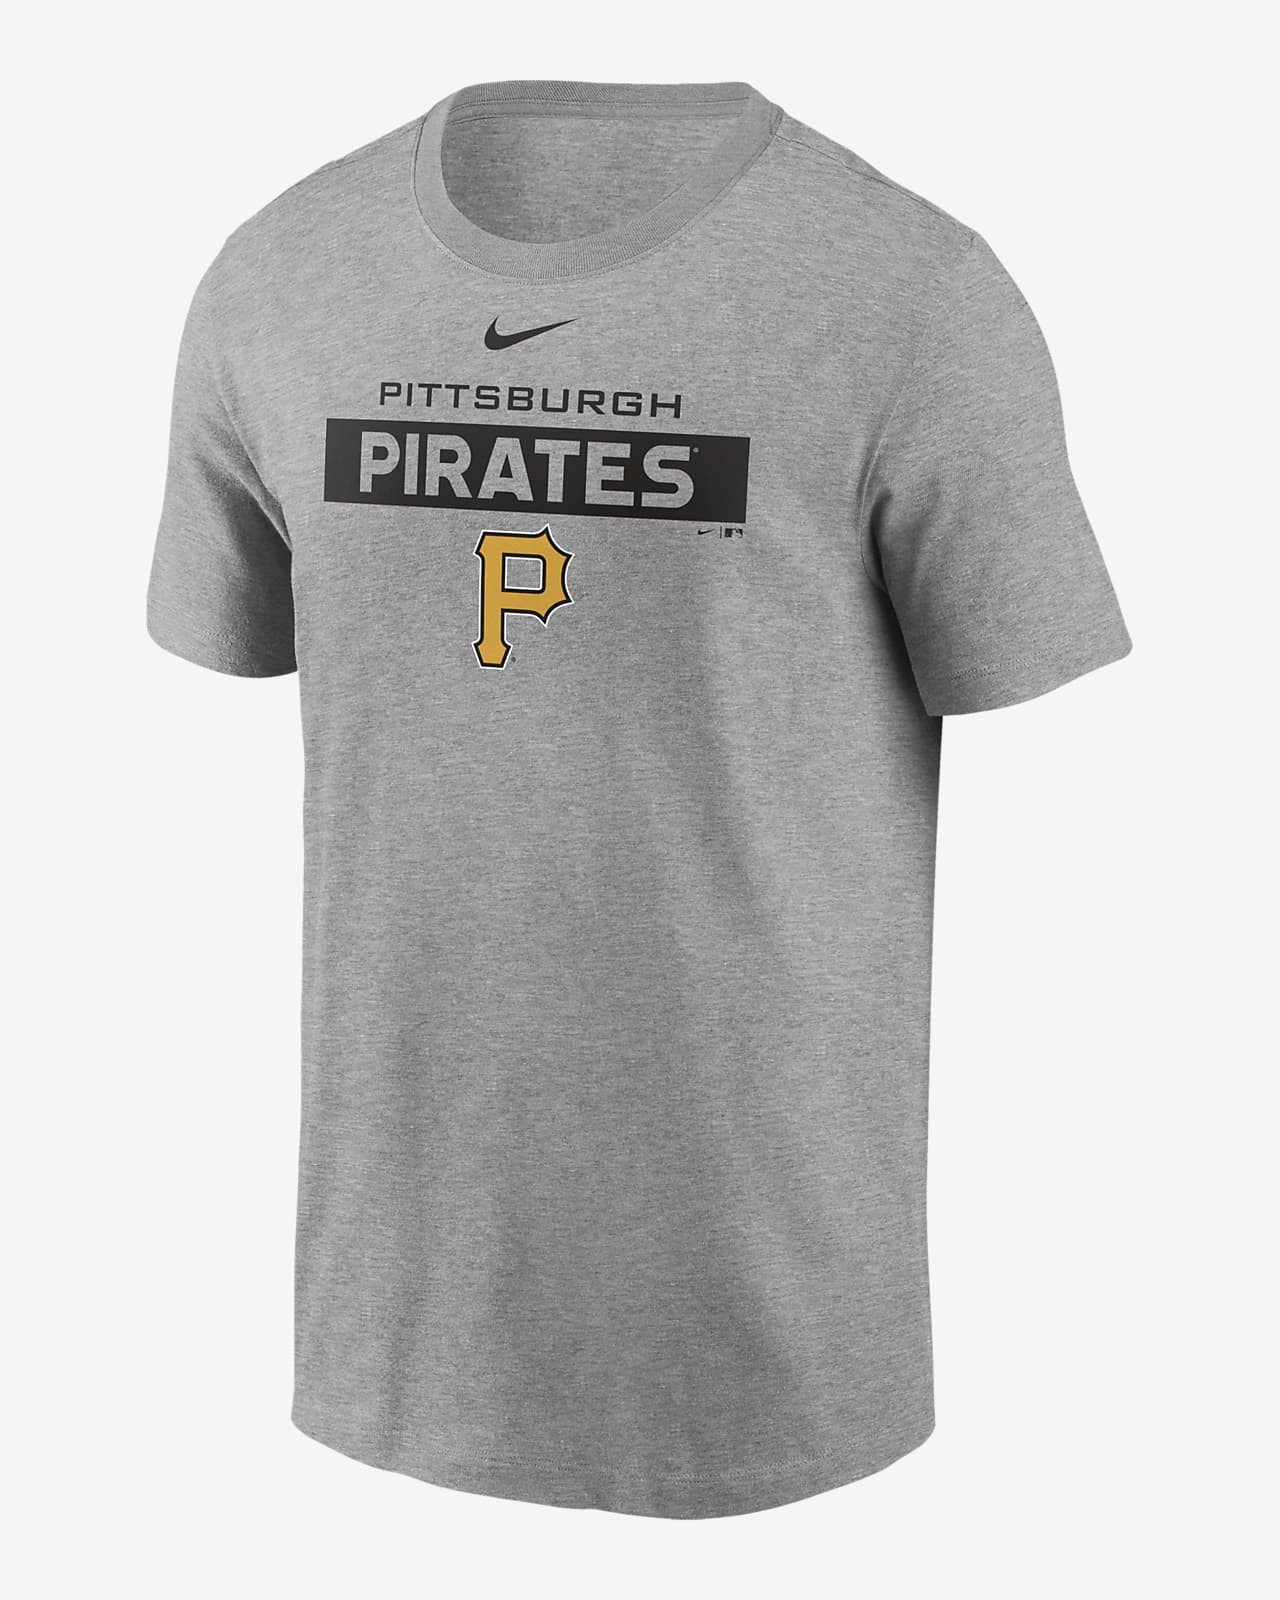 nike pittsburgh pirates shirt